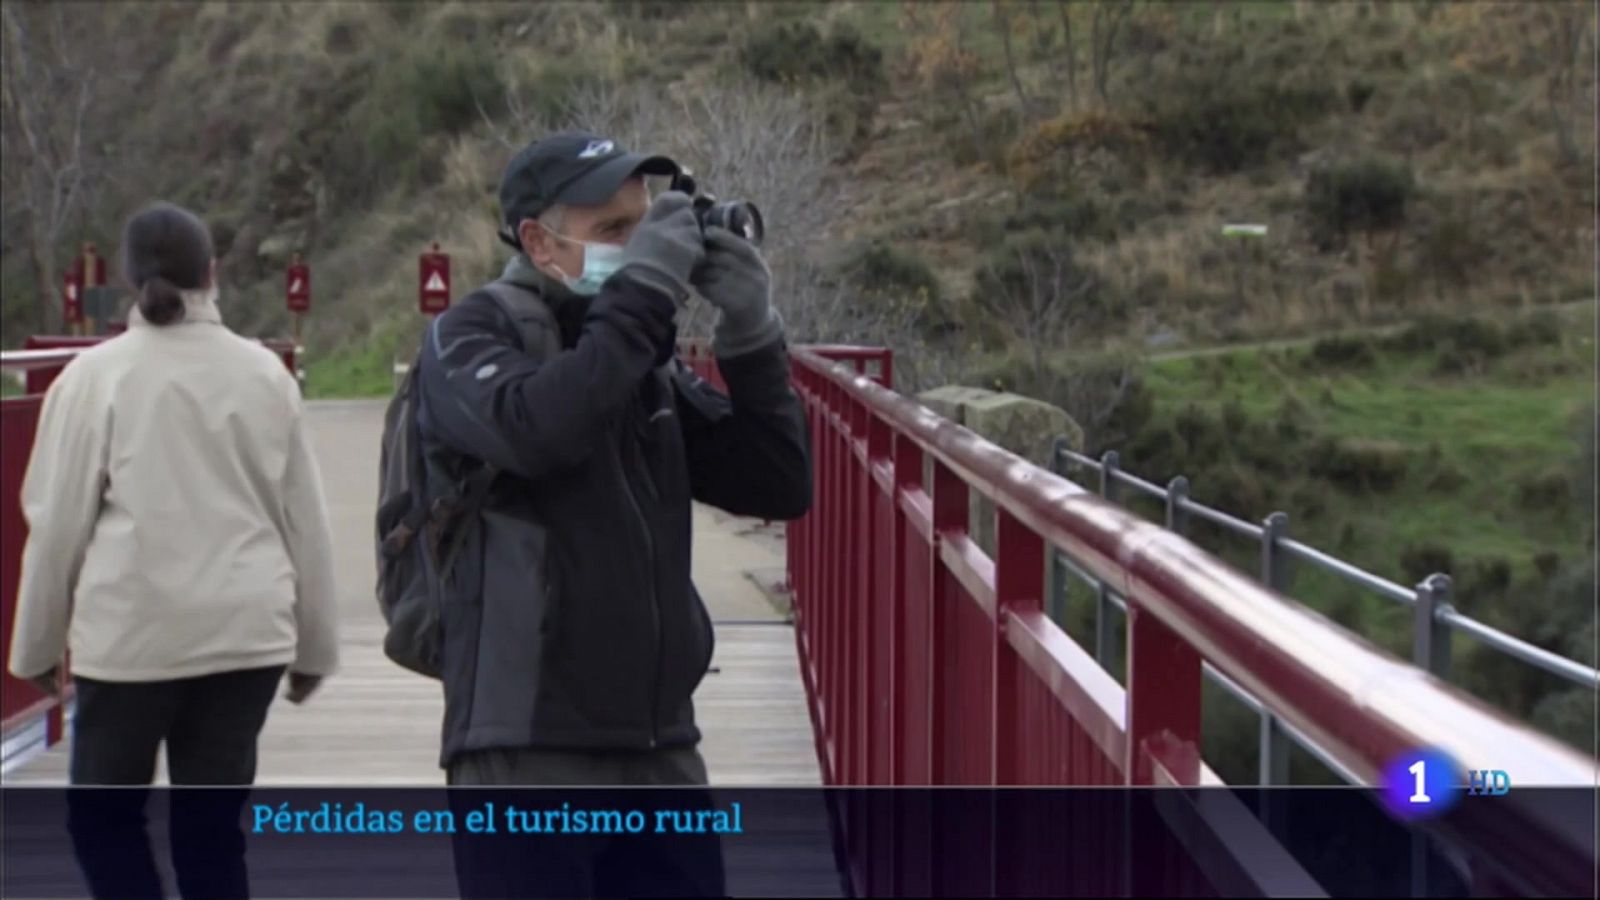 Pérdidas en el turismo rural en Extremadura 